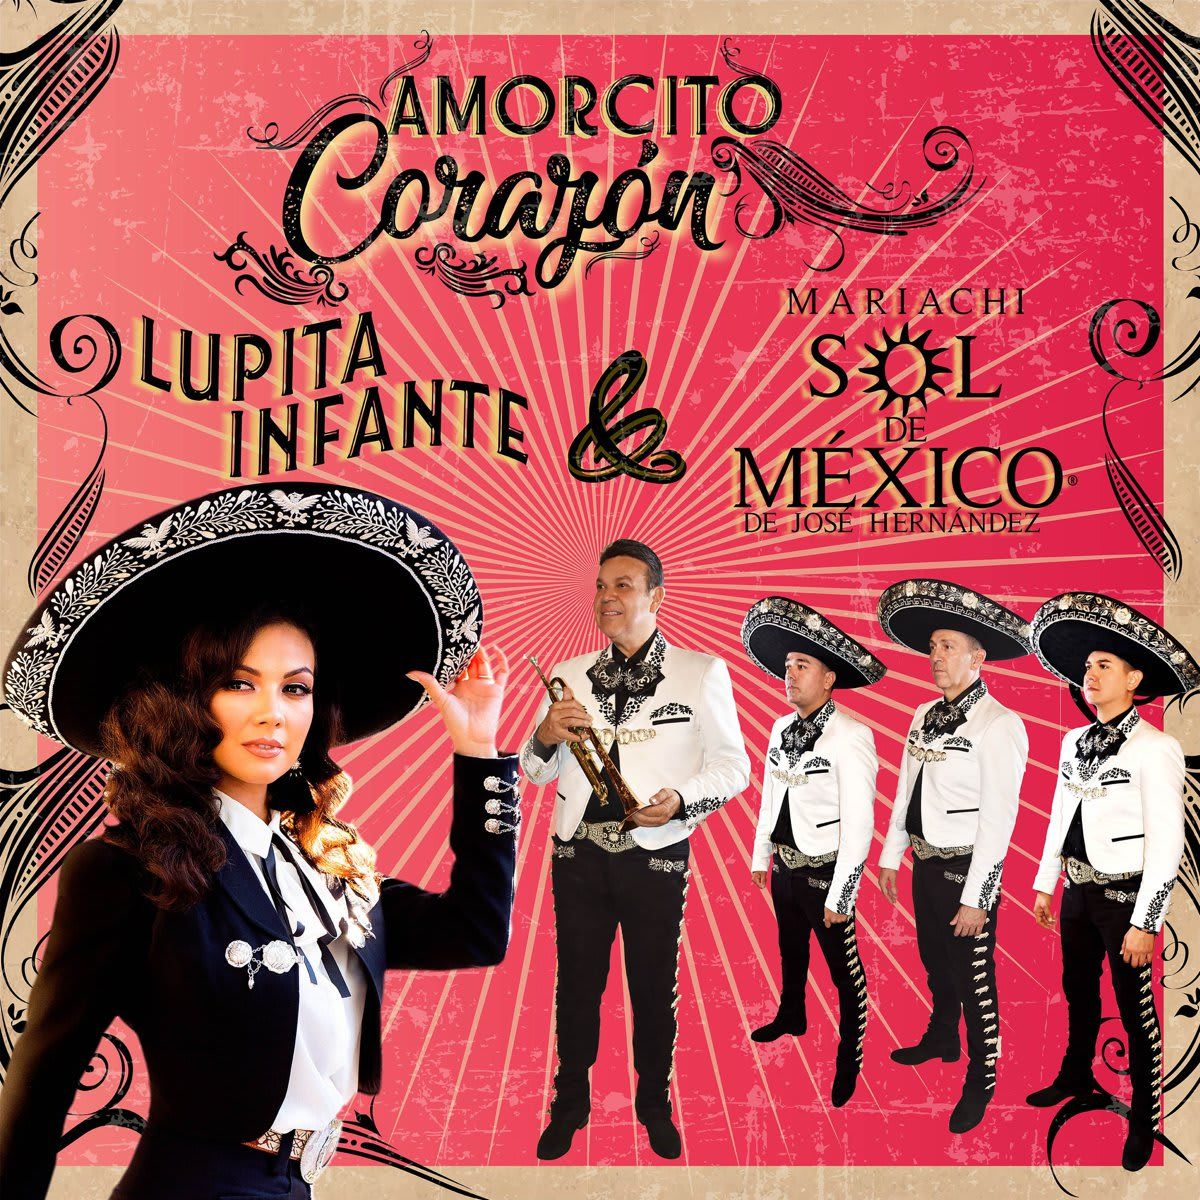 Cover of Lupita Infante and Mariachi Sol de México de José Hernández's new song, “Amorcito corazón."